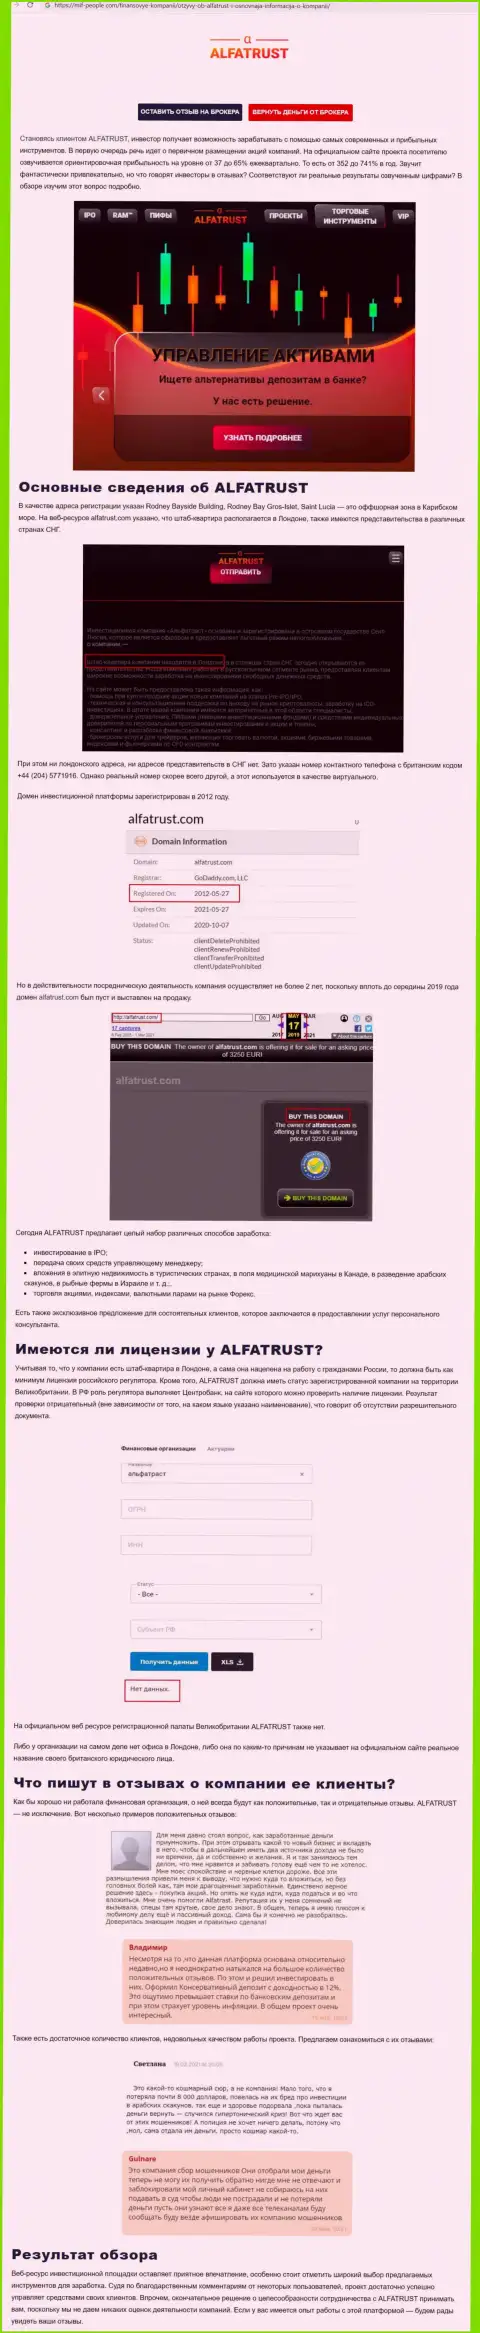 Информационный портал mif people com опубликовал материал о forex организации Альфа Траст